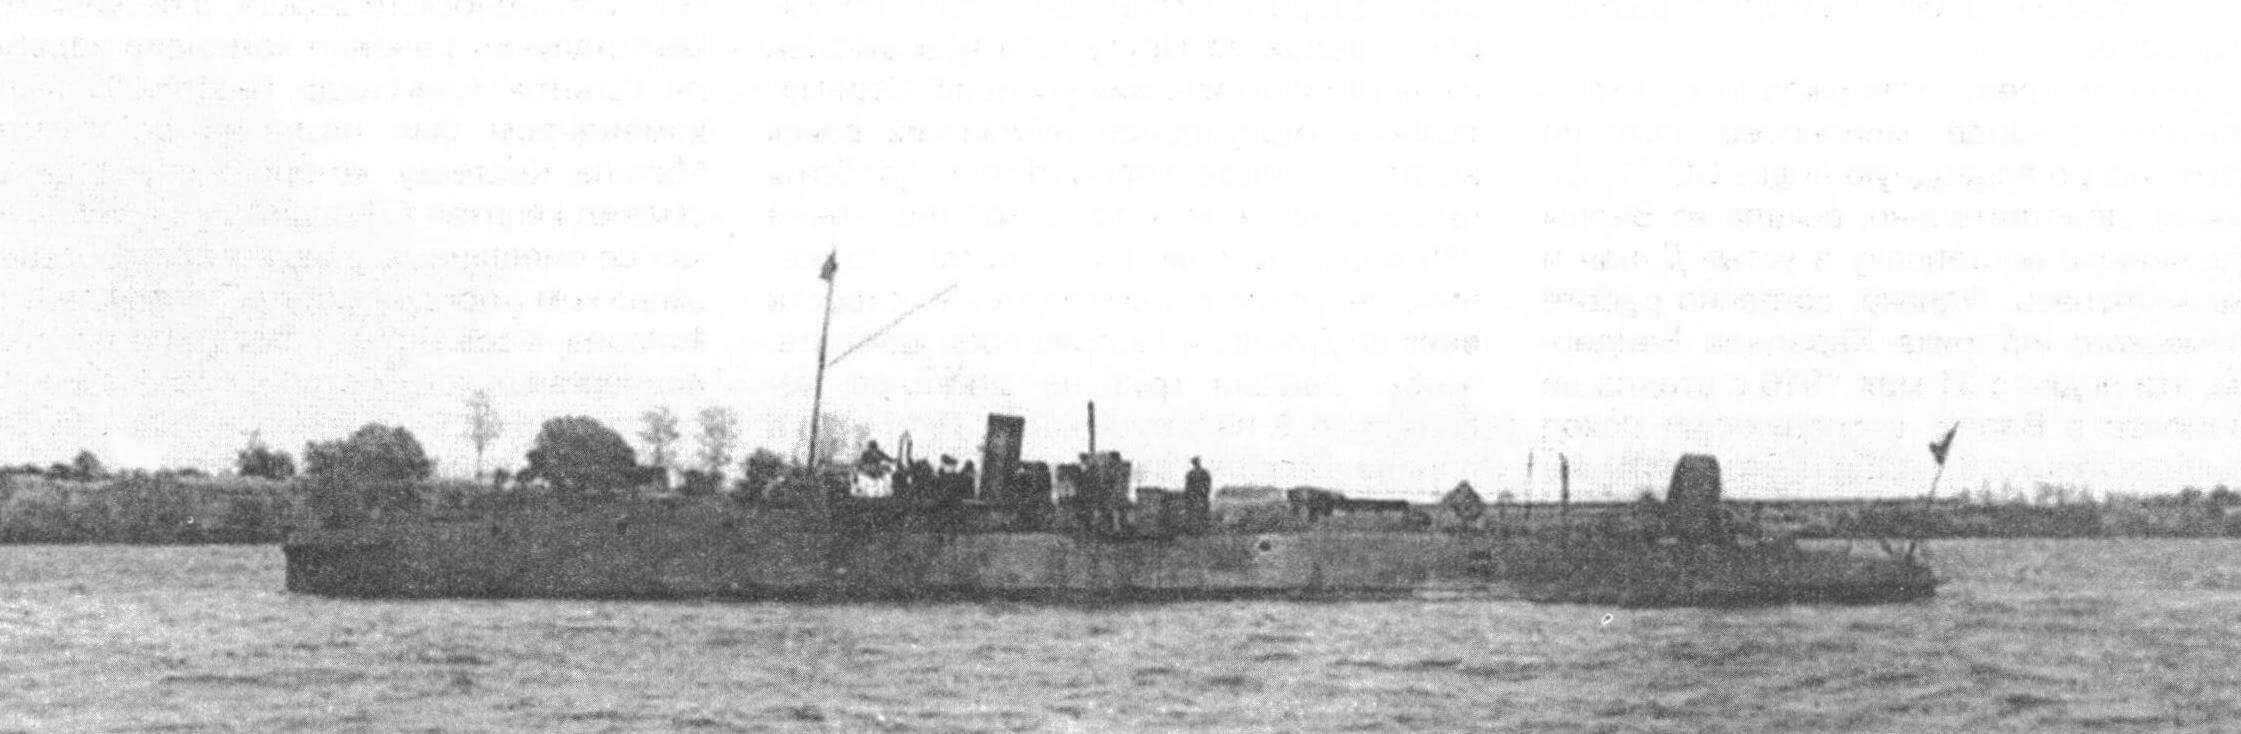 «Сборул» на Дунае в районе Измаила, 1917 год